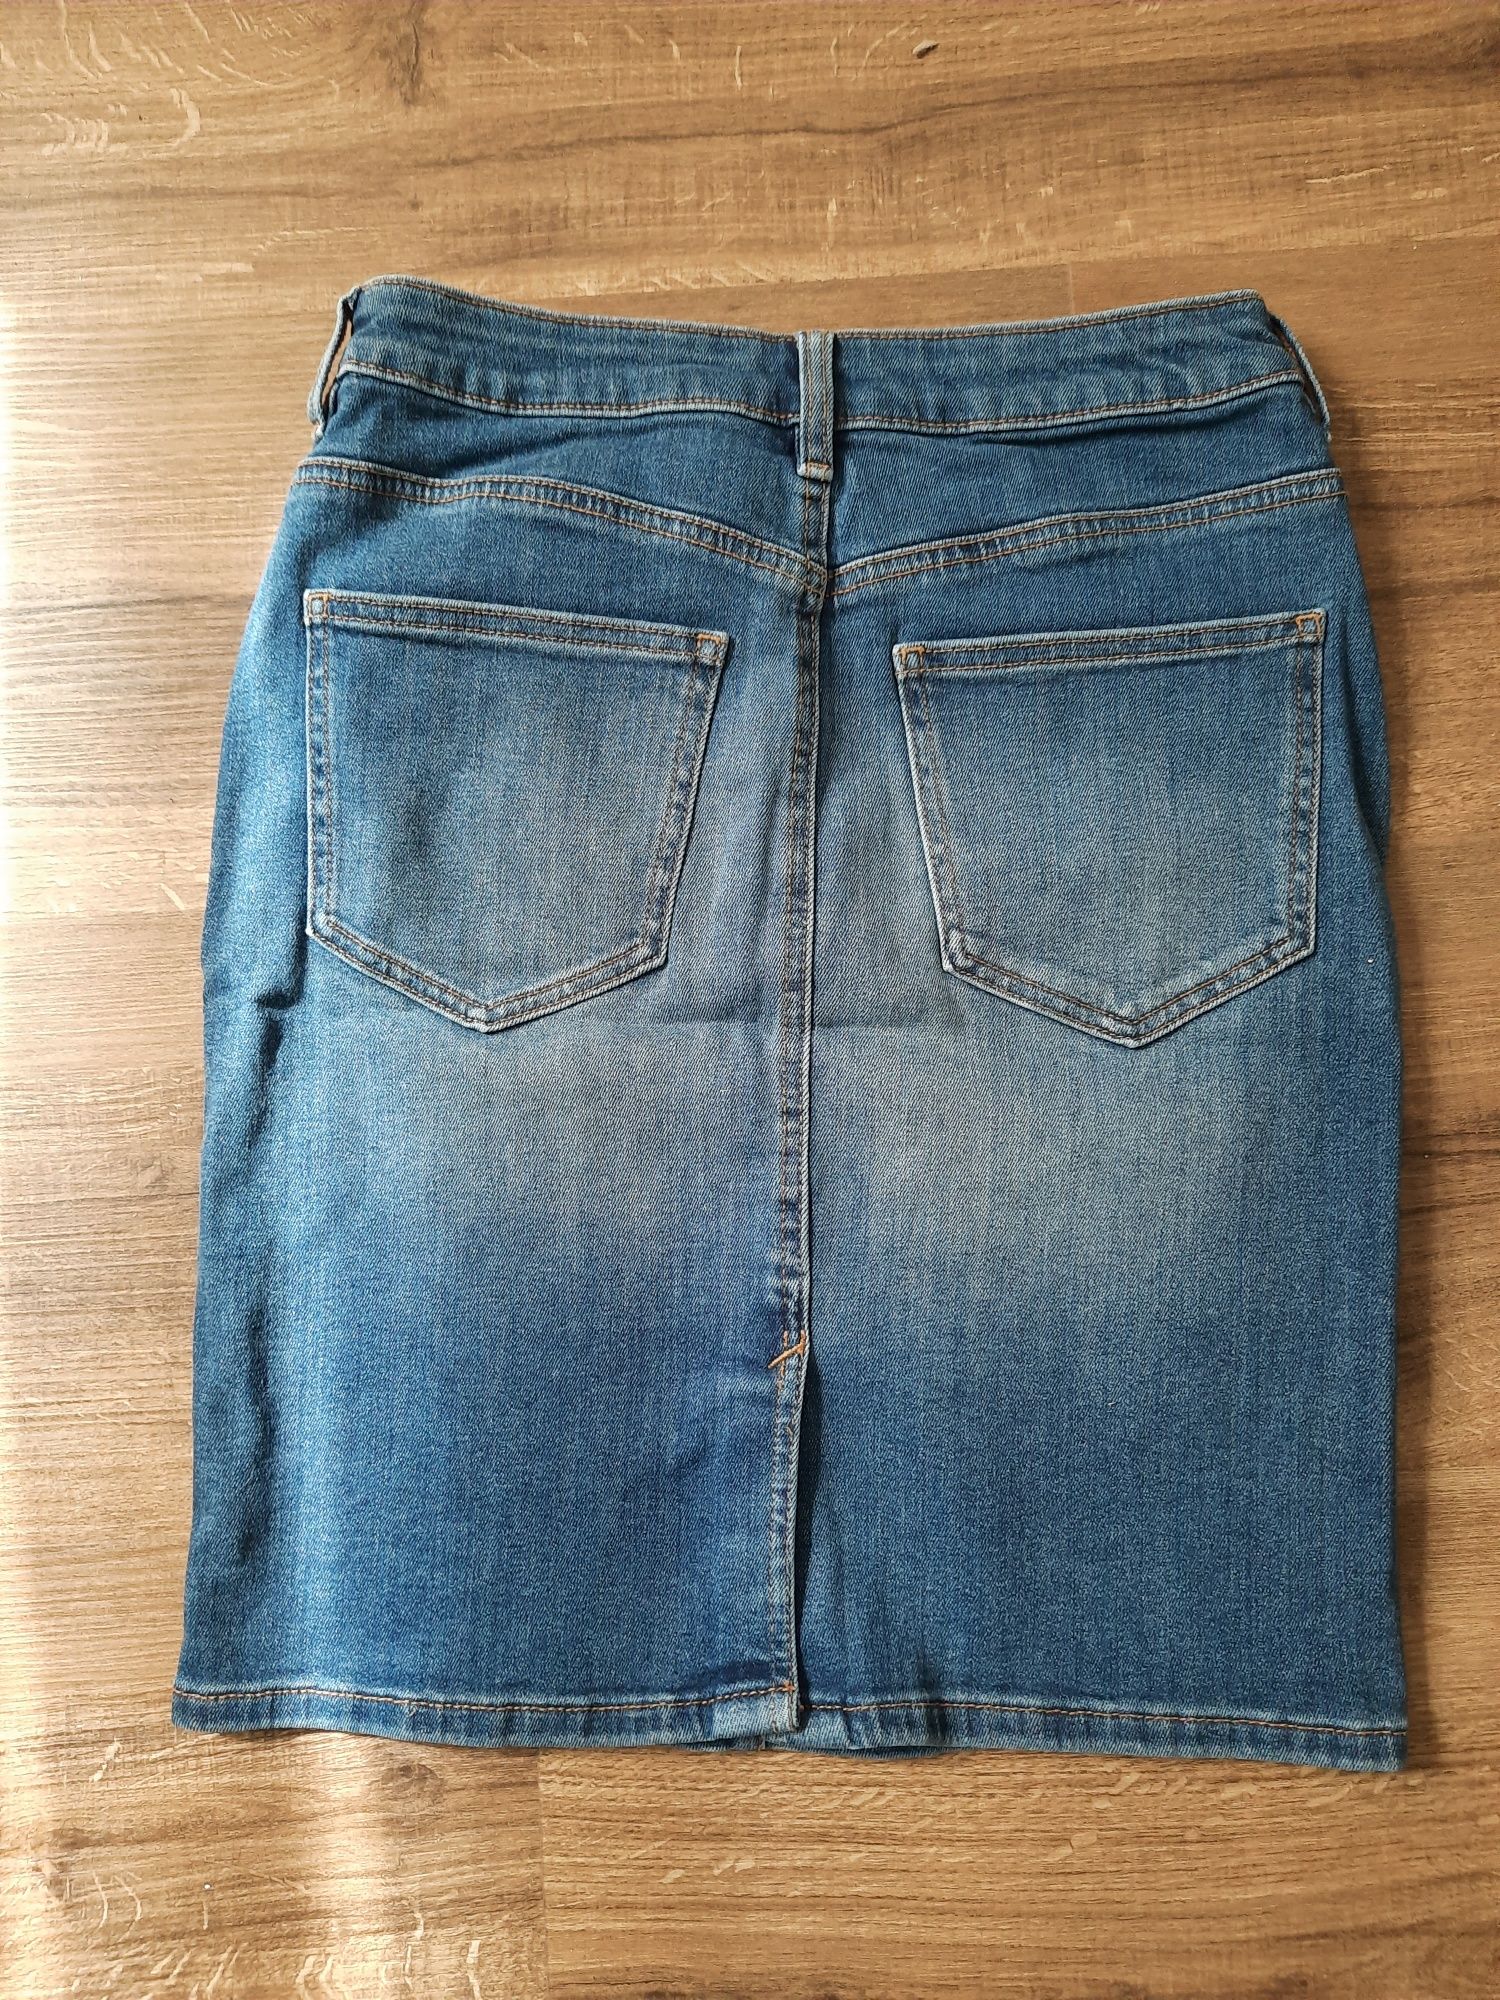 Spódnica jeansowa TOM TAILOR DENIM r.36 (nowa)